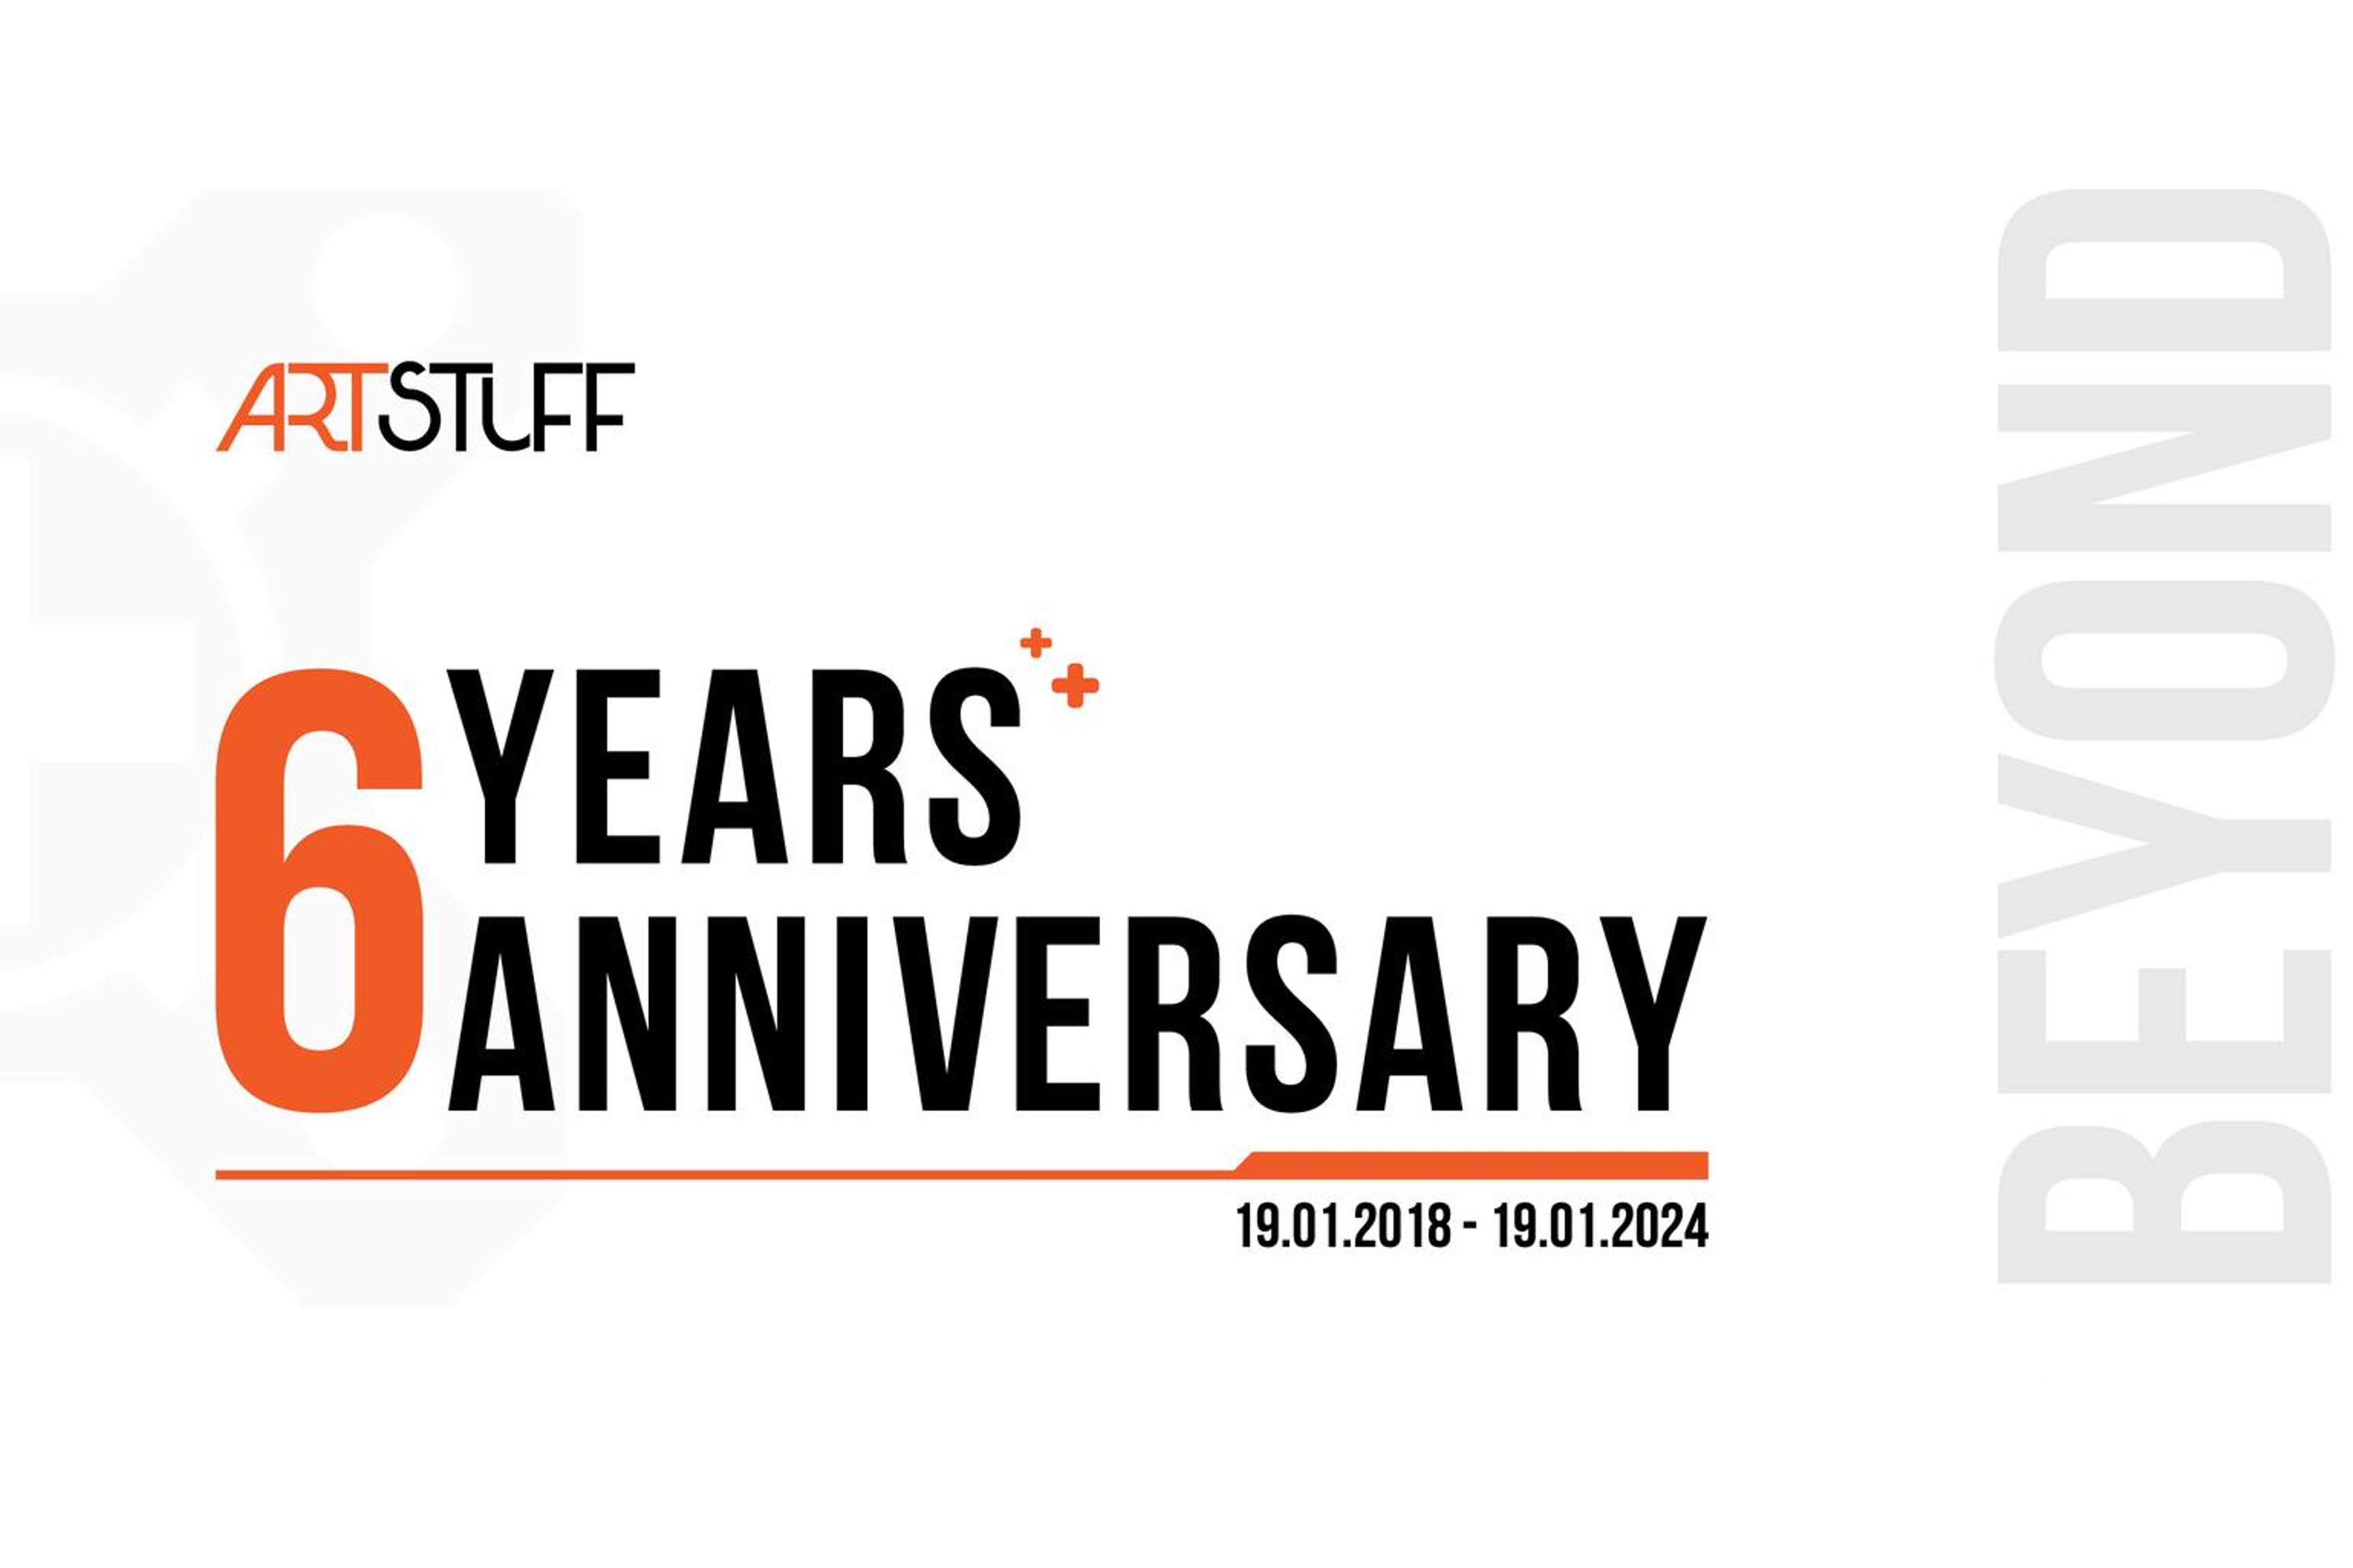 Chúc mừng ARTSTUFF tròn 6 năm thành lập và phát triển!